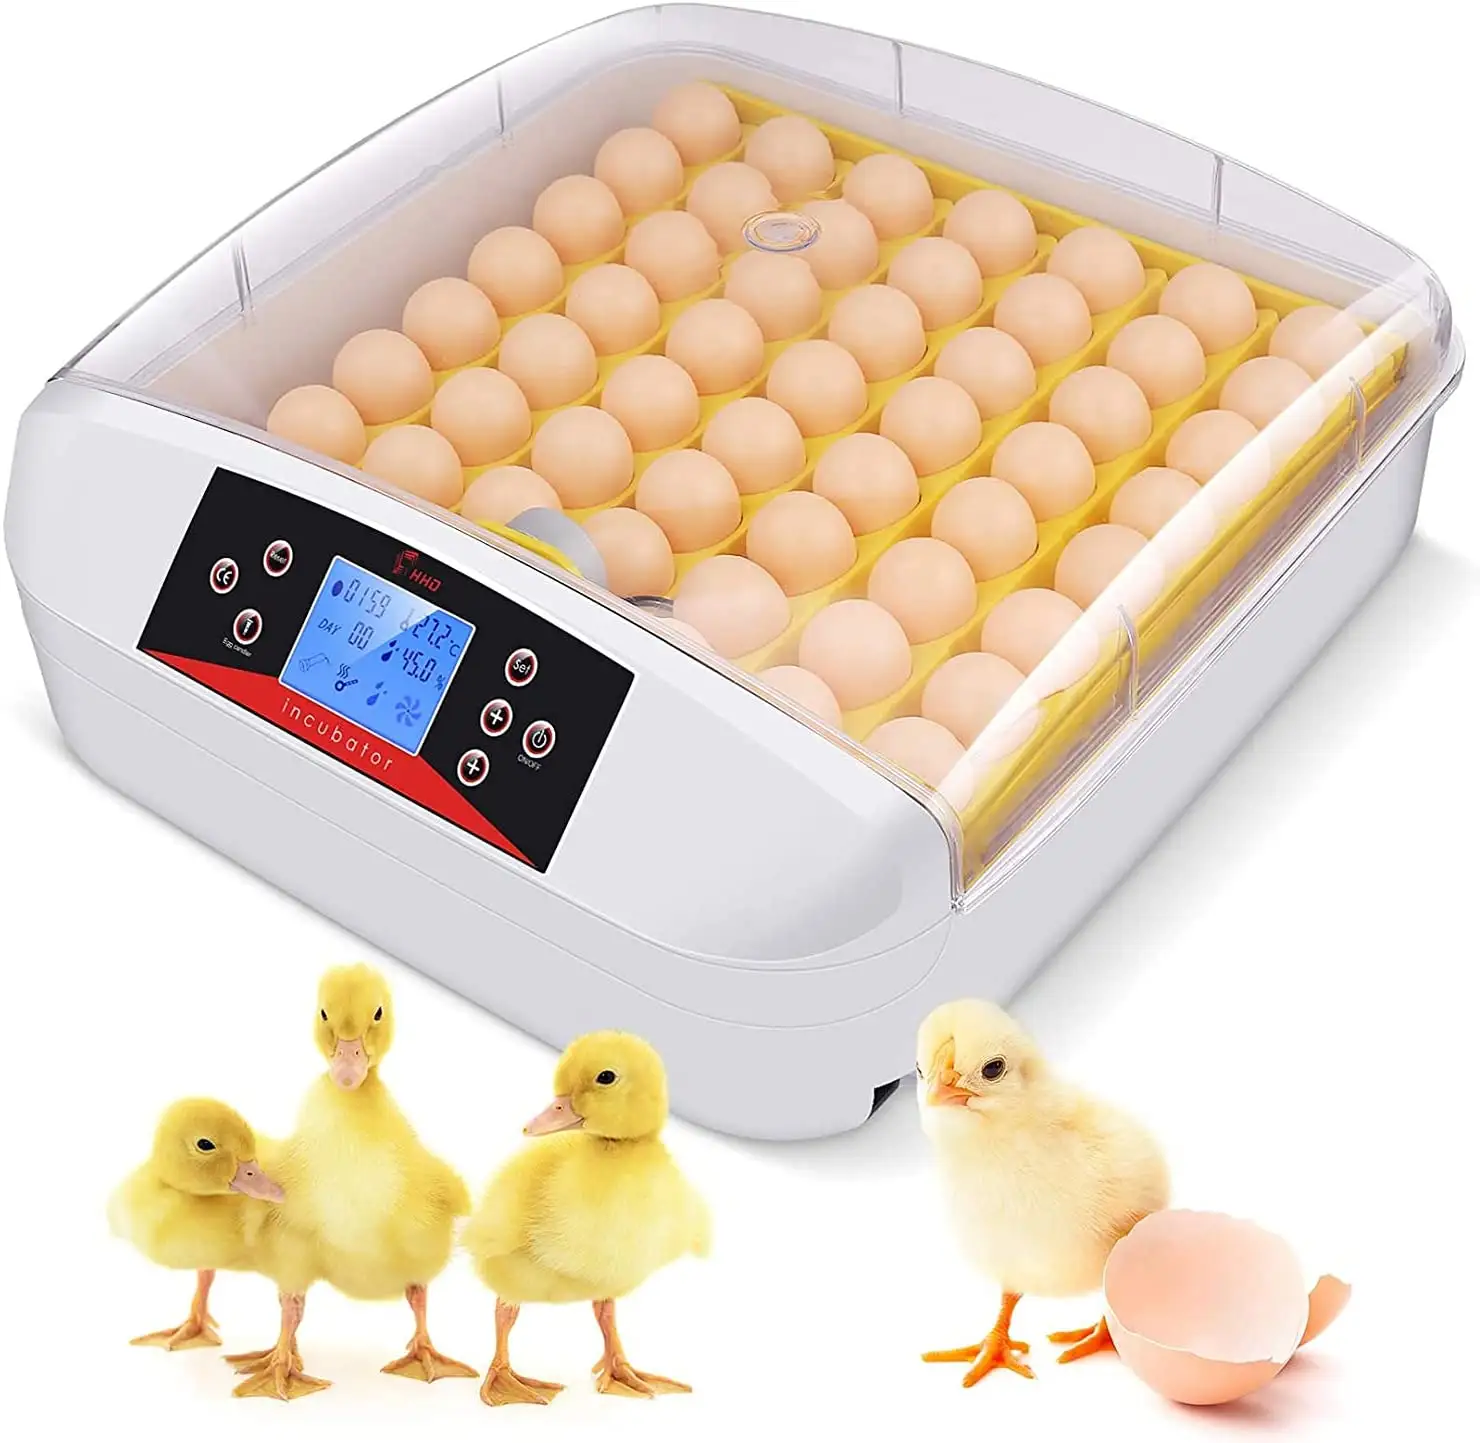 Светодиодный инкубатор для яиц с функцией тестирования 56 яиц, 110 В, 220 В, горячая Распродажа, новый, горячее надувательство